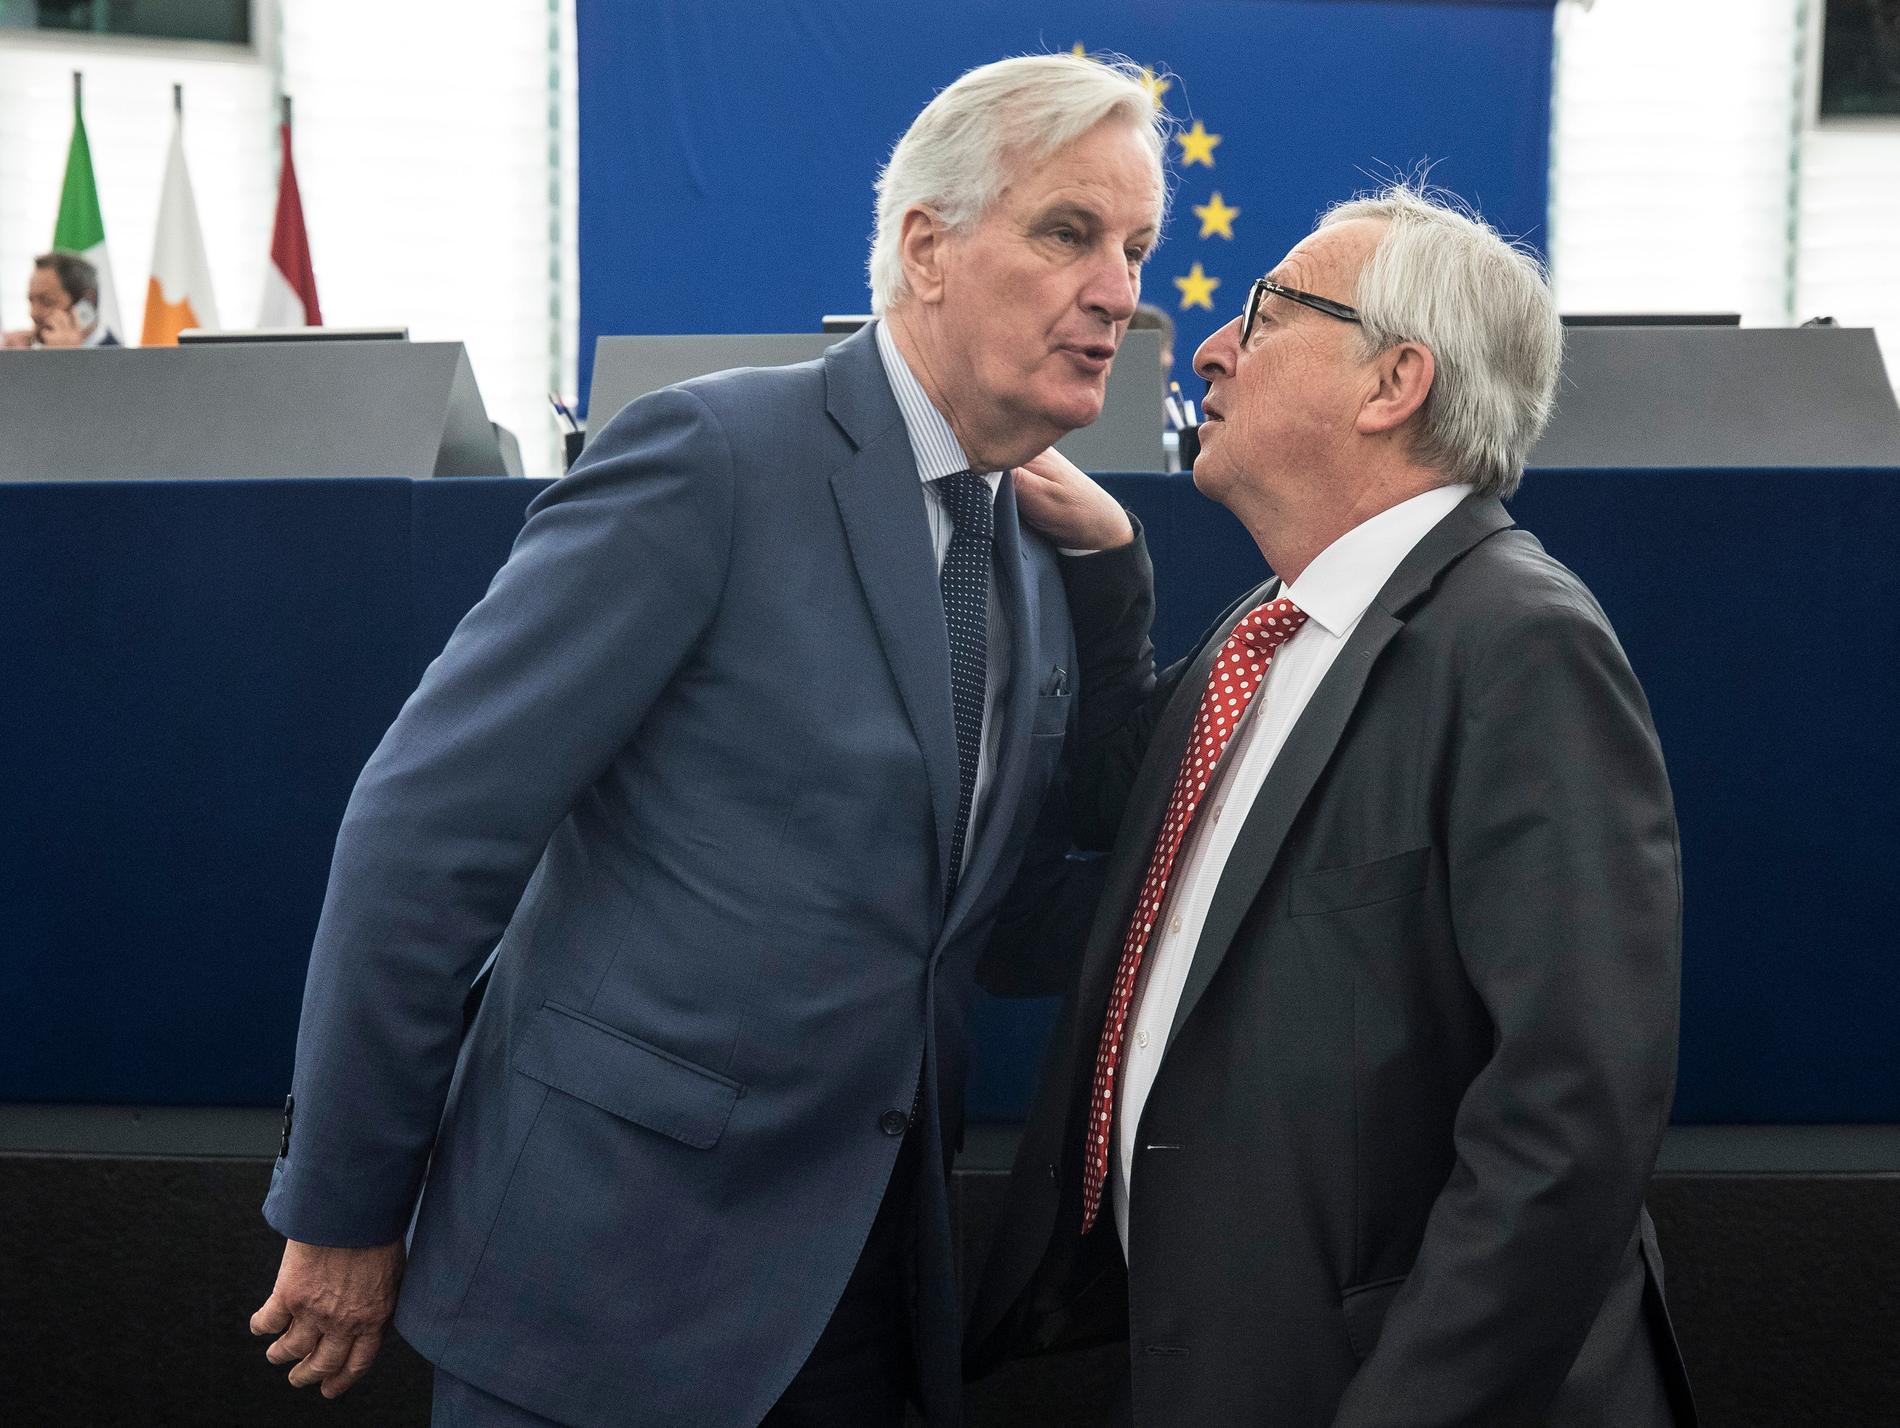 Michel Barnier (till vänster) är EU:s chefsförhandlare om brexit och nämns flitigt som tänkbar ersättare till kommissionsordförande Jean-Claude Juncker (till höger). Arkivfoto.